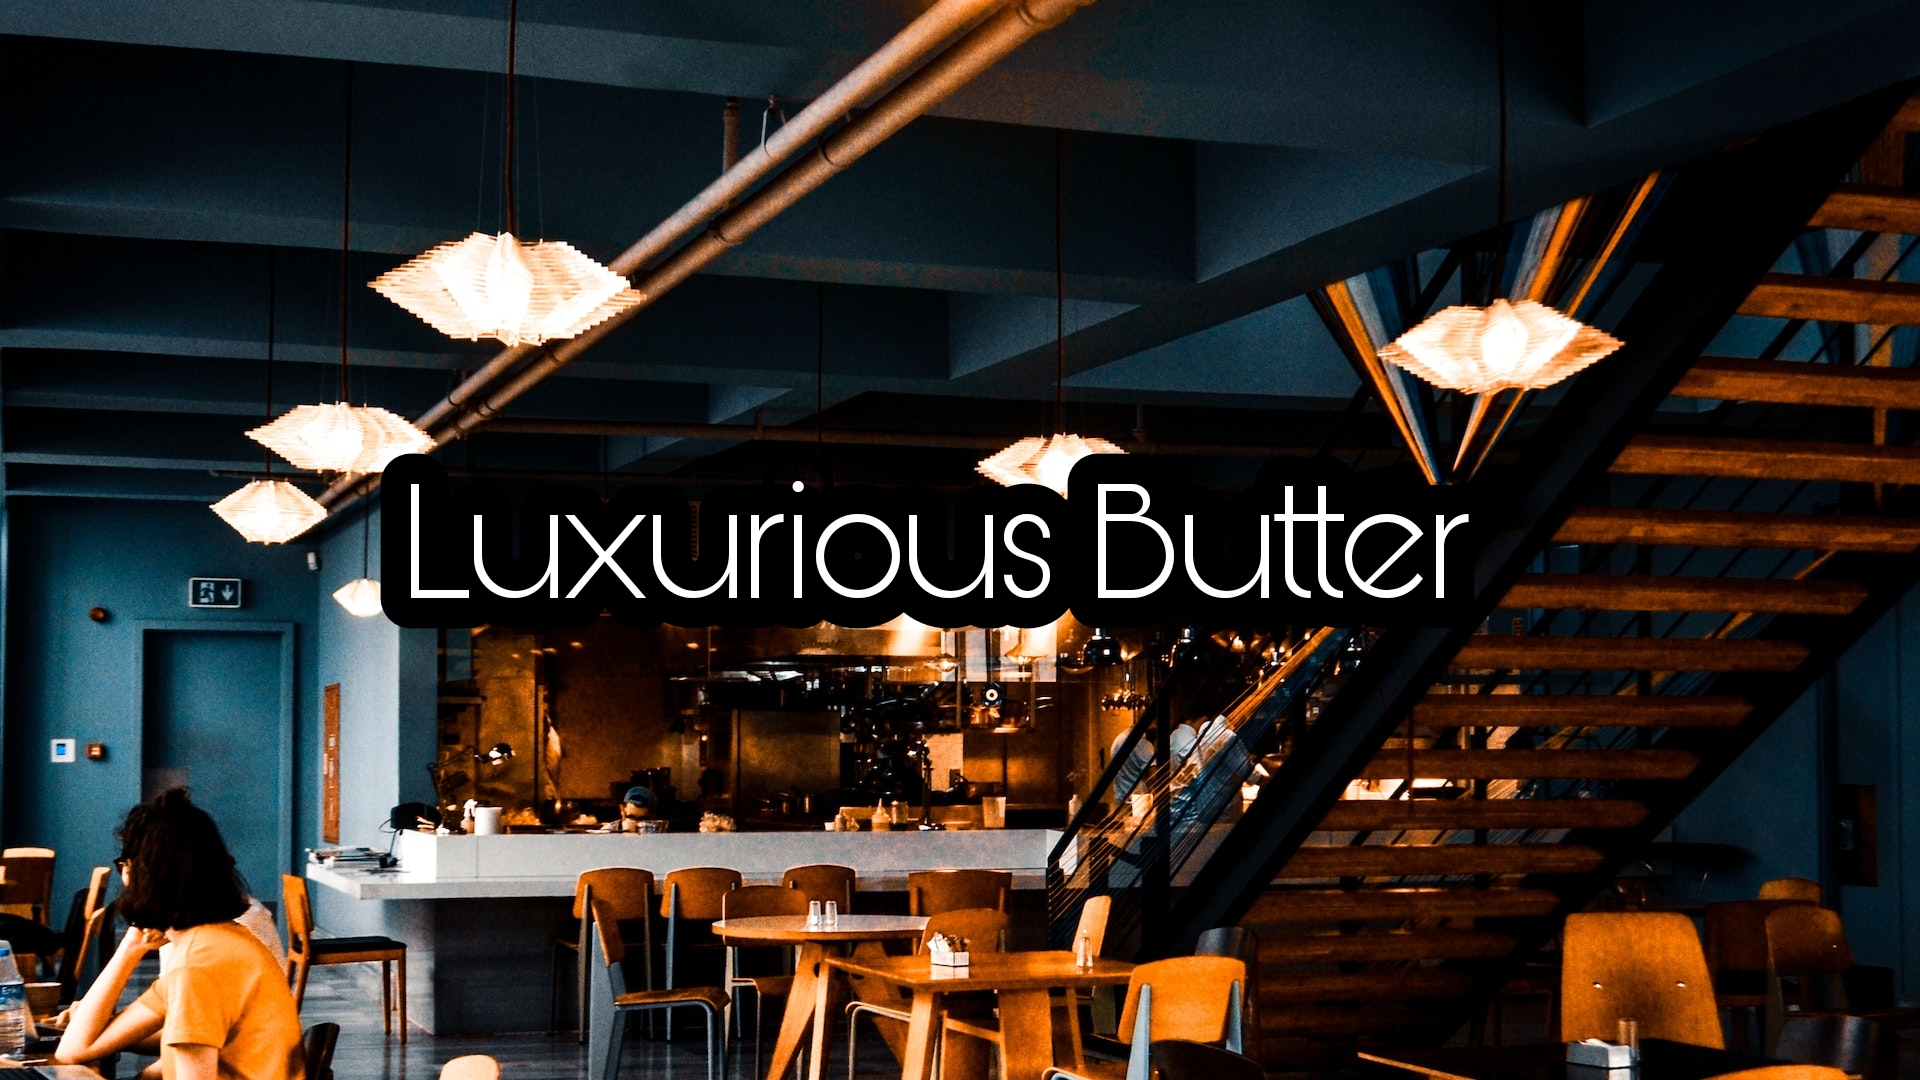 Luxurious butter